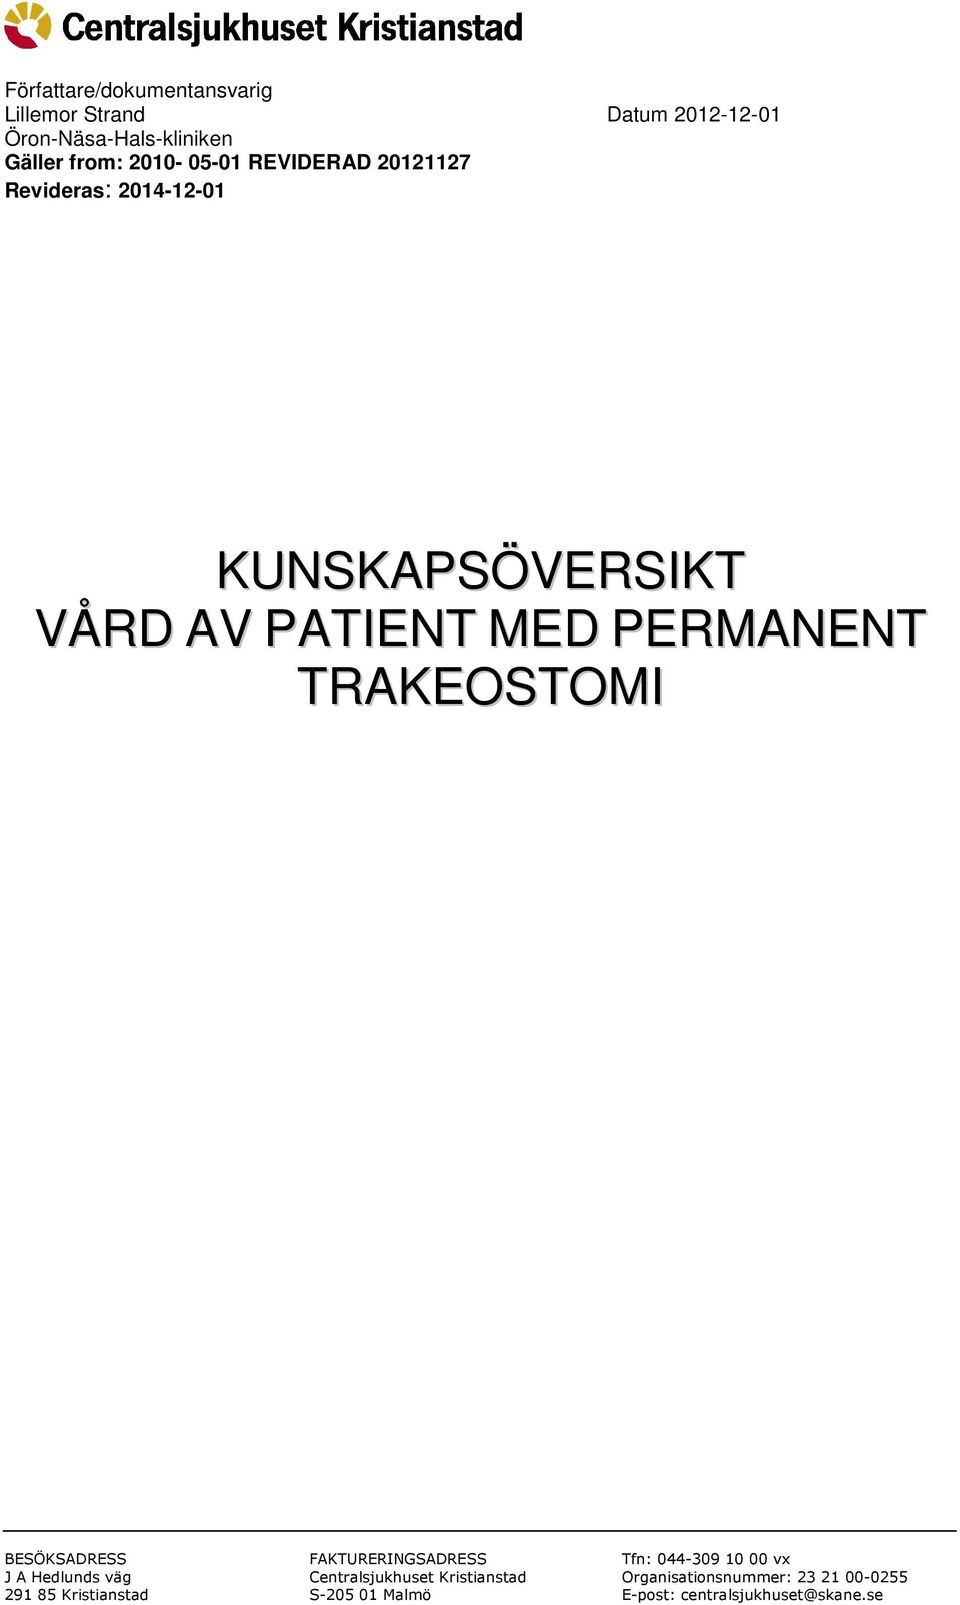 TRAKEOSTOMI BESÖKSADRESS J A Hedlunds väg 291 85 Kristianstad FAKTURERINGSADRESS Centralsjukhuset